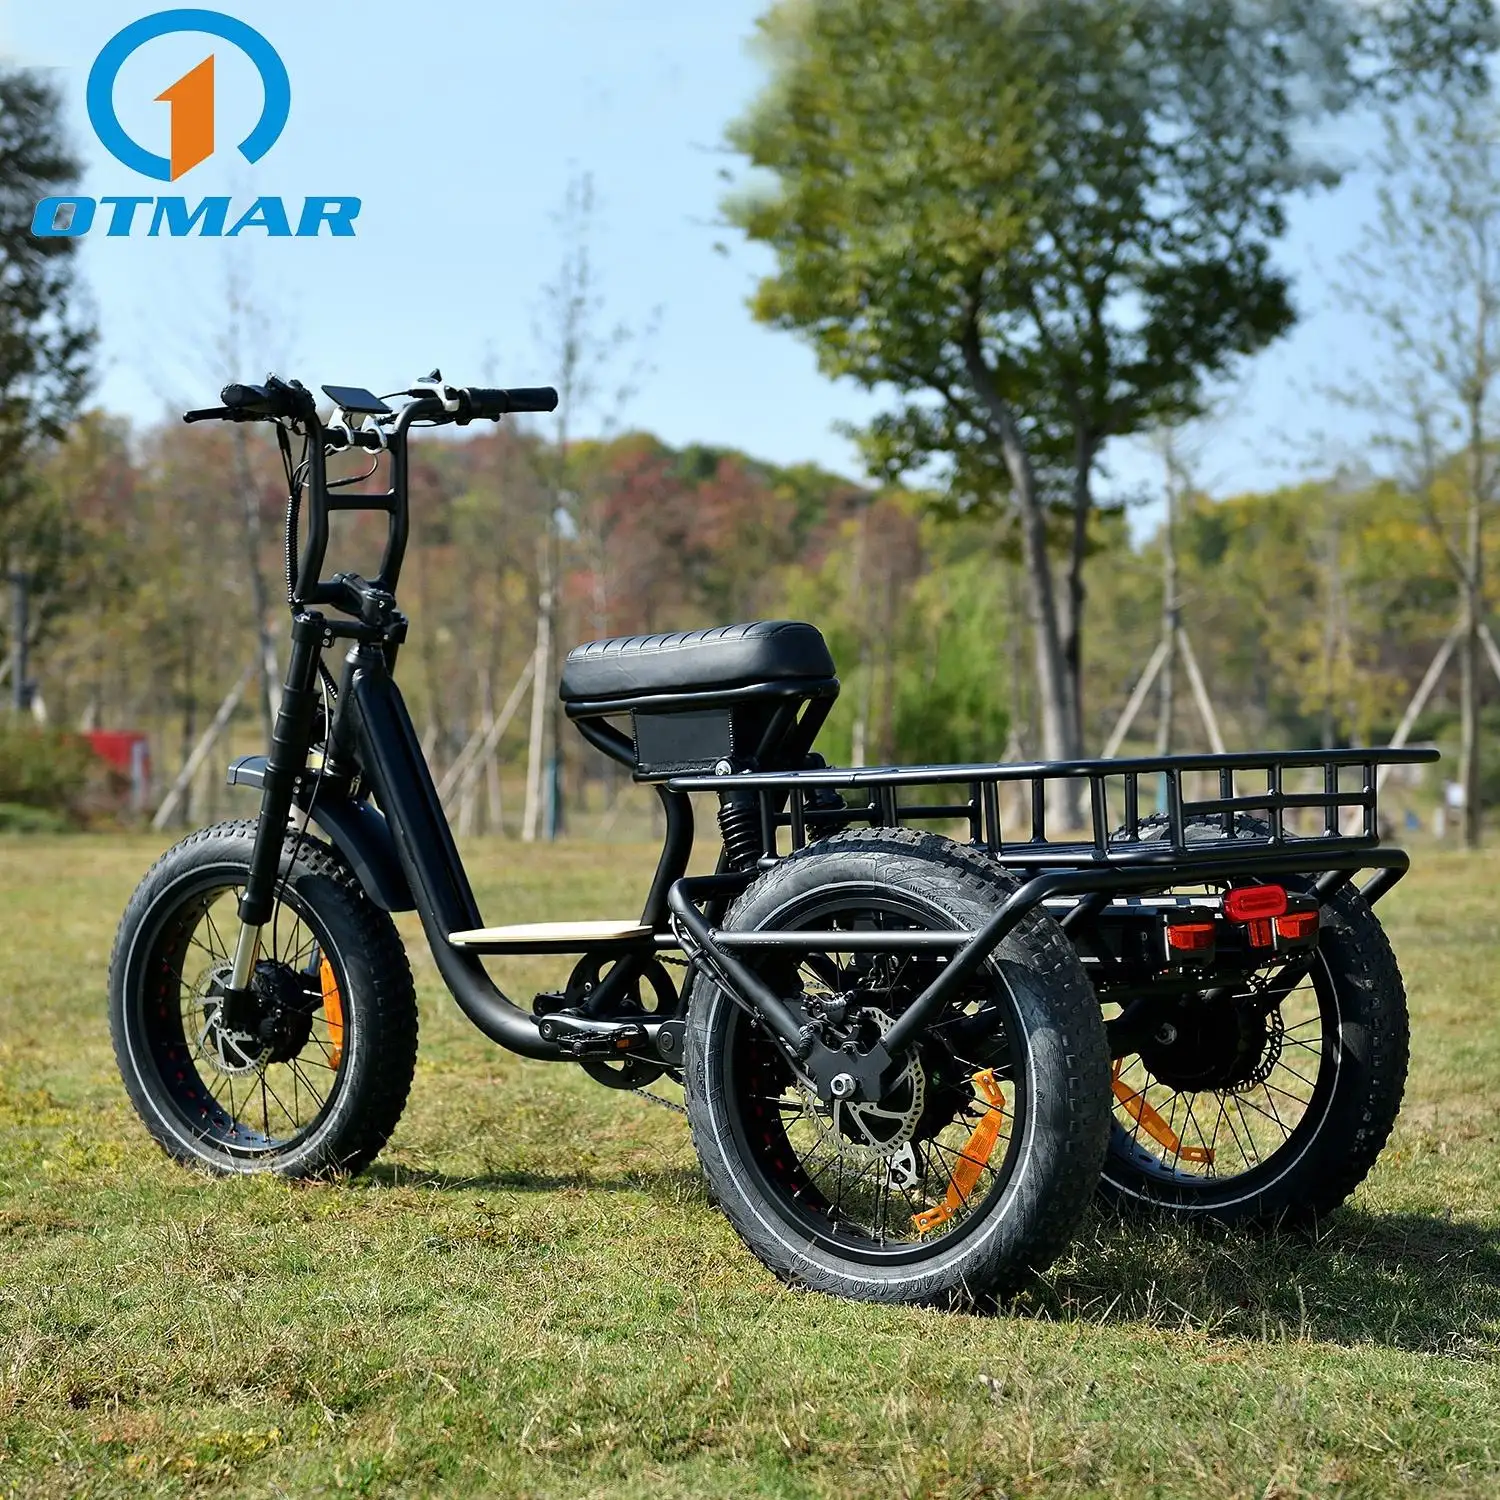 Moteur à trois roues motrices OTM 48v750W 20 "x 4.0 gros pneu de montagne grande puissance camping voyage vélo électrique à 3 roues tricycle électrique